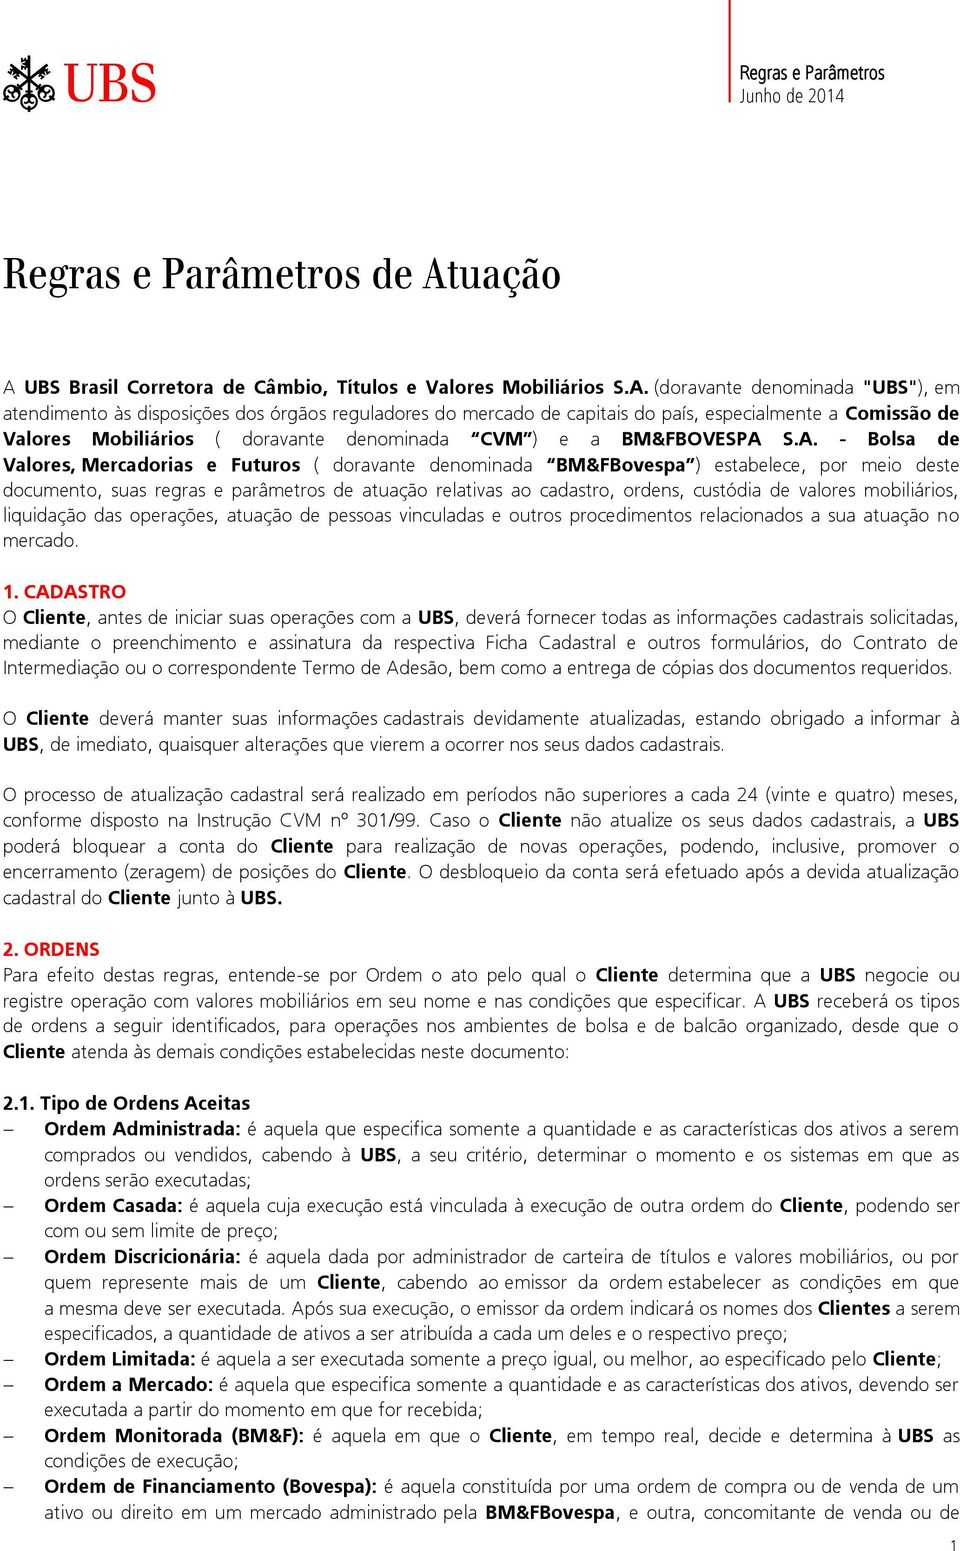 UBS Brasil Corretora de Câmbio, Títulos e Valores Mobiliários S.A.